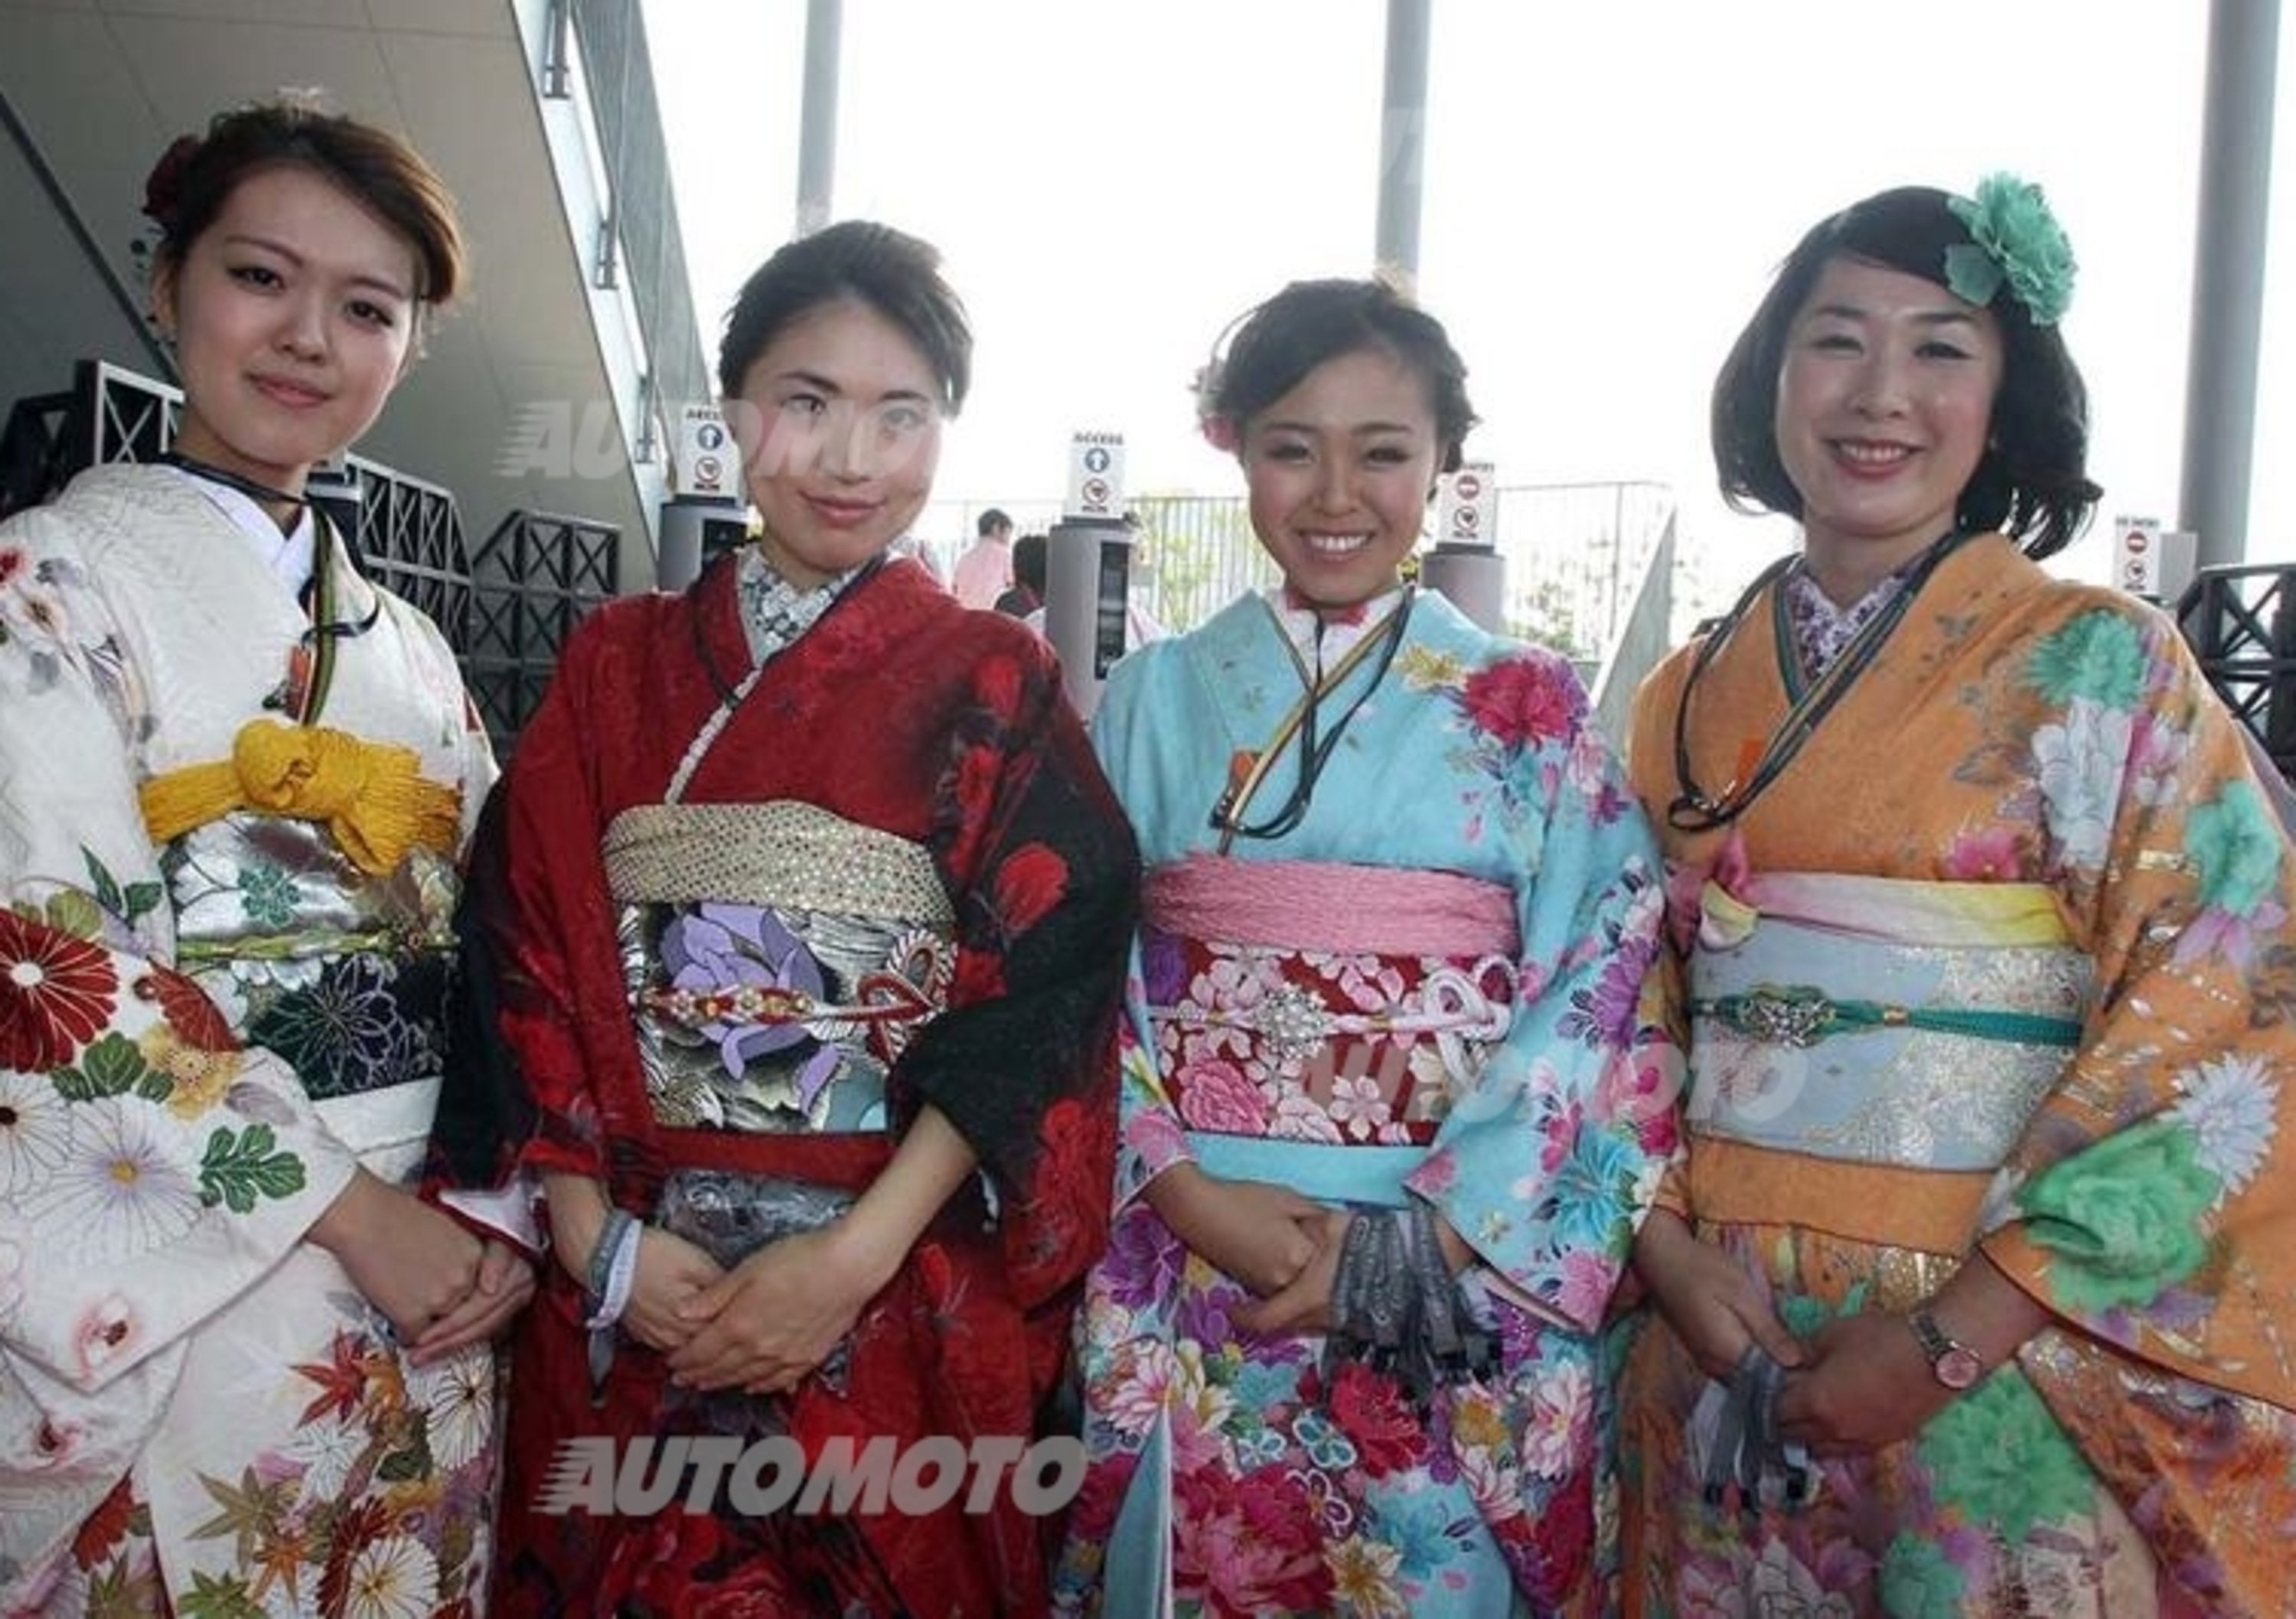 F1 Giappone 2013: le foto pi&ugrave; belle del GP di Suzuka